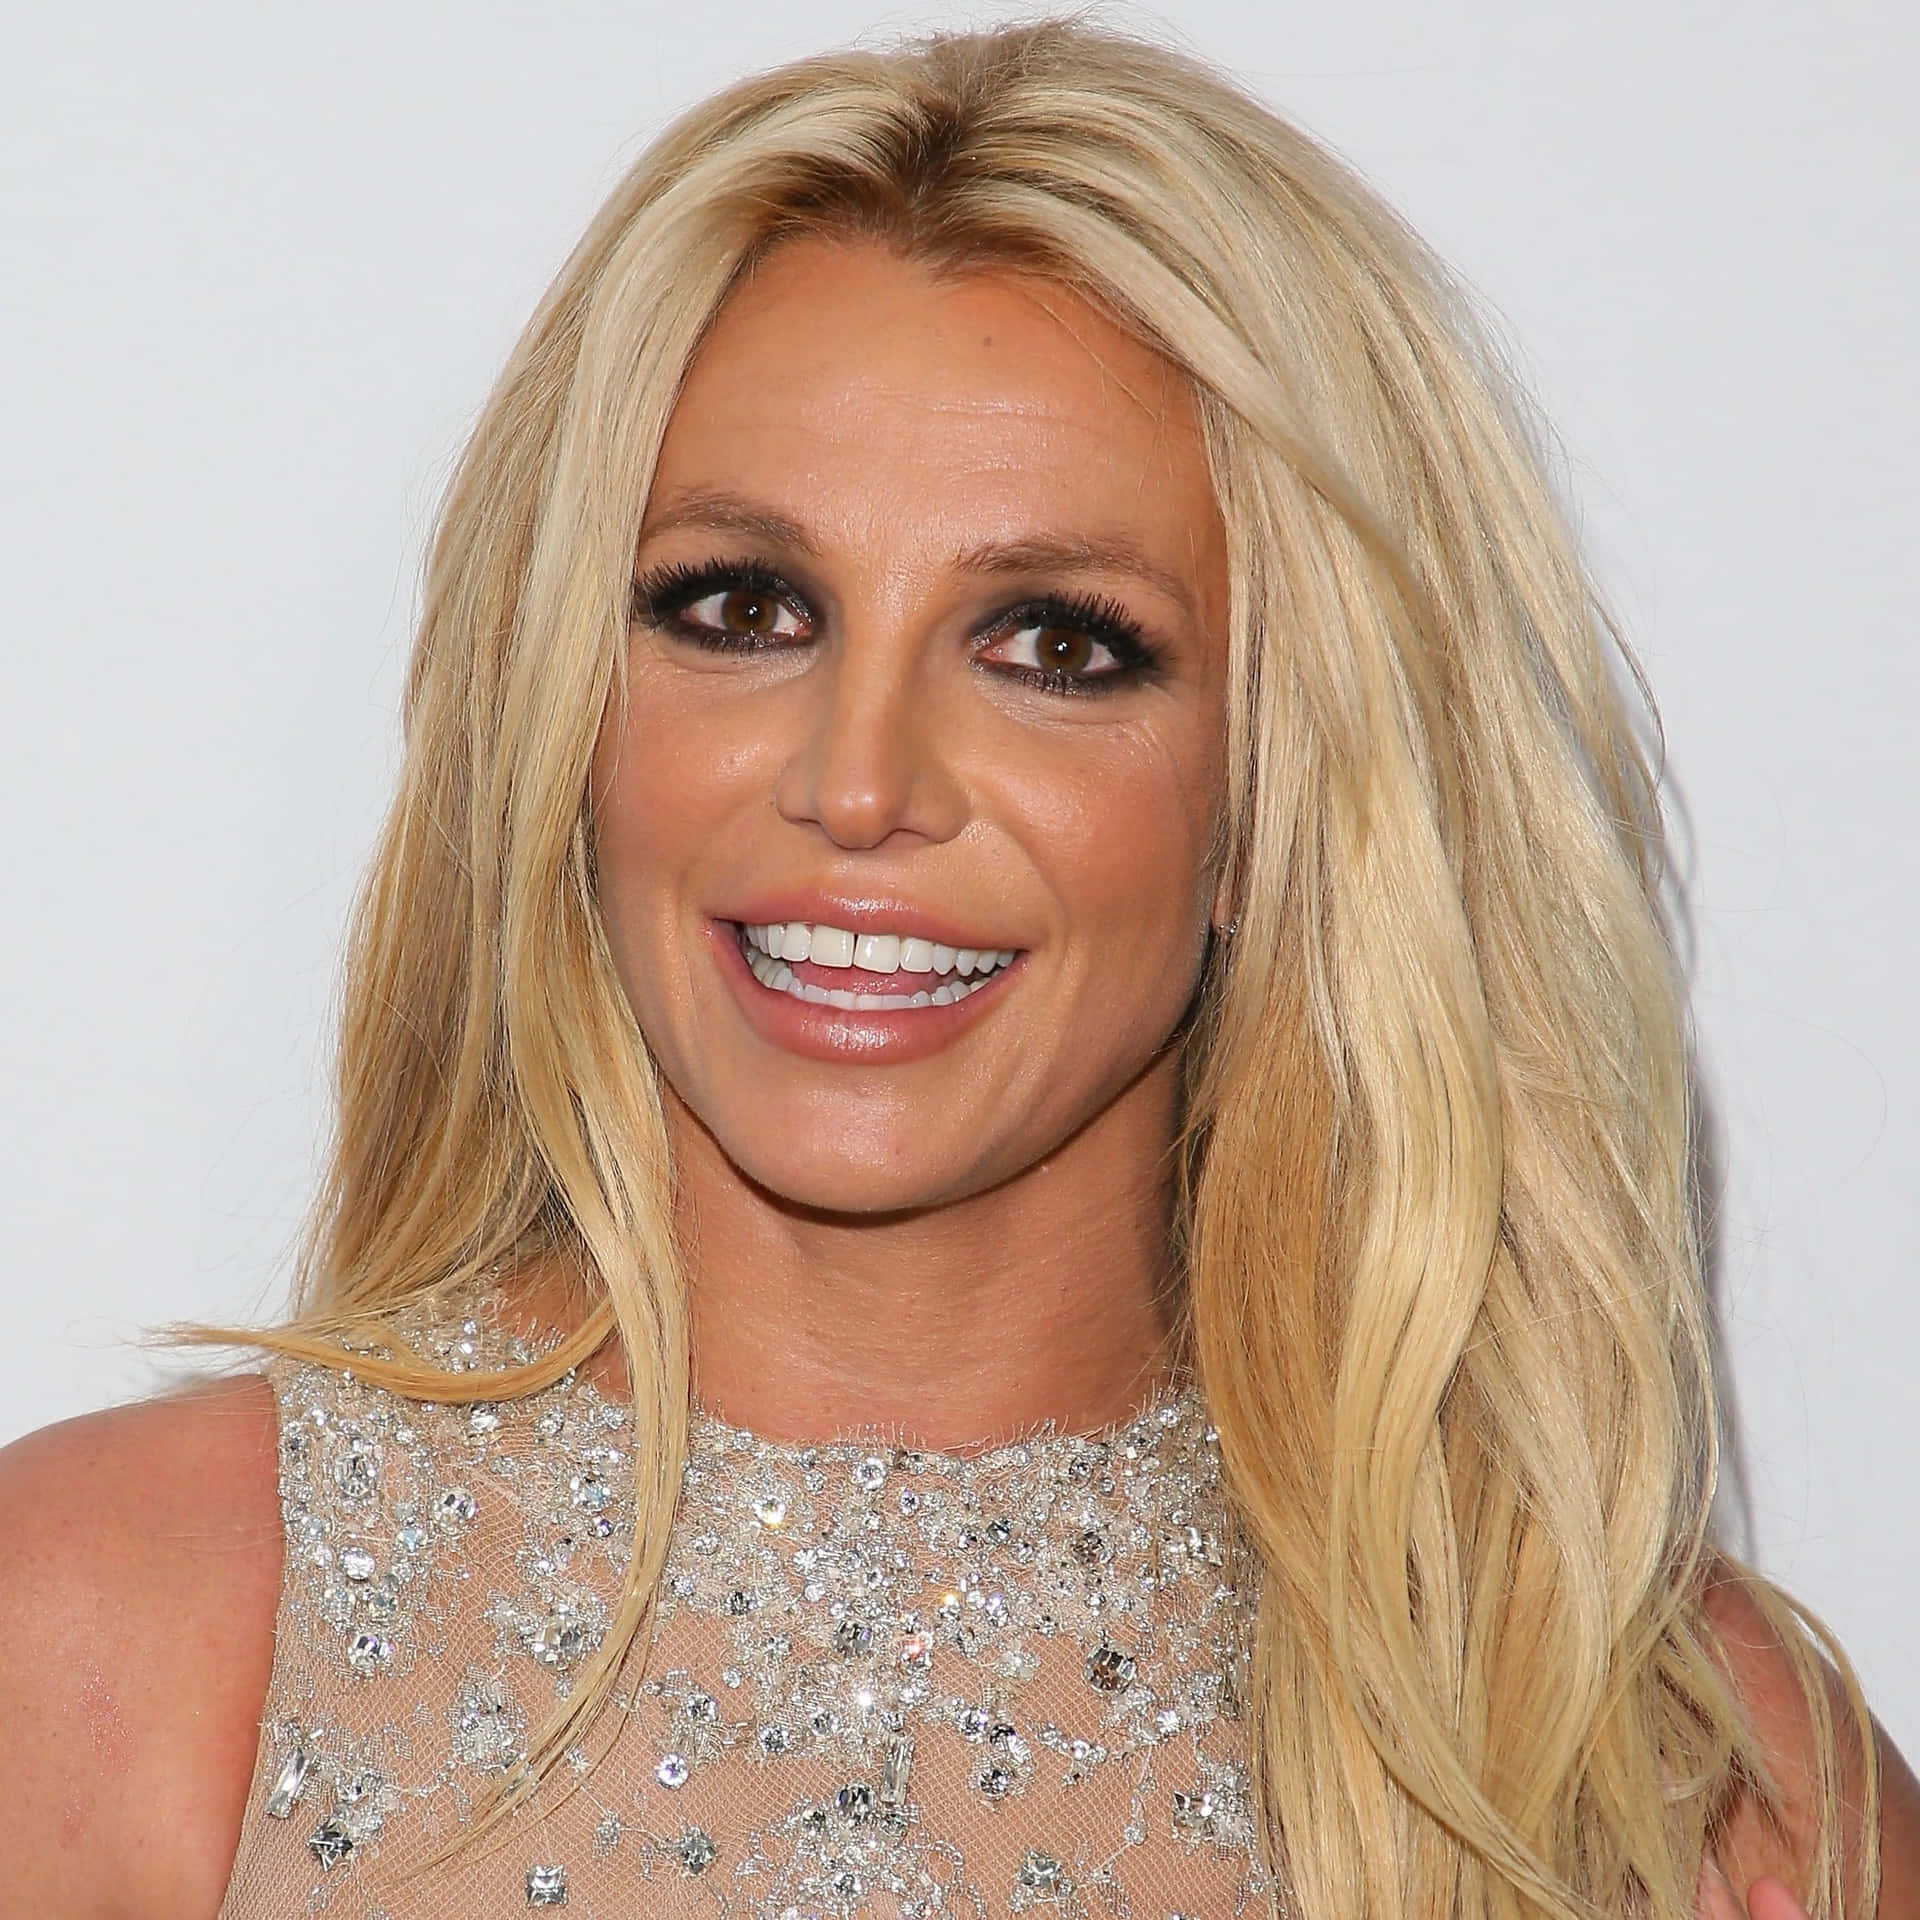 Britneyspears Tritt Auf Der Bühne Auf